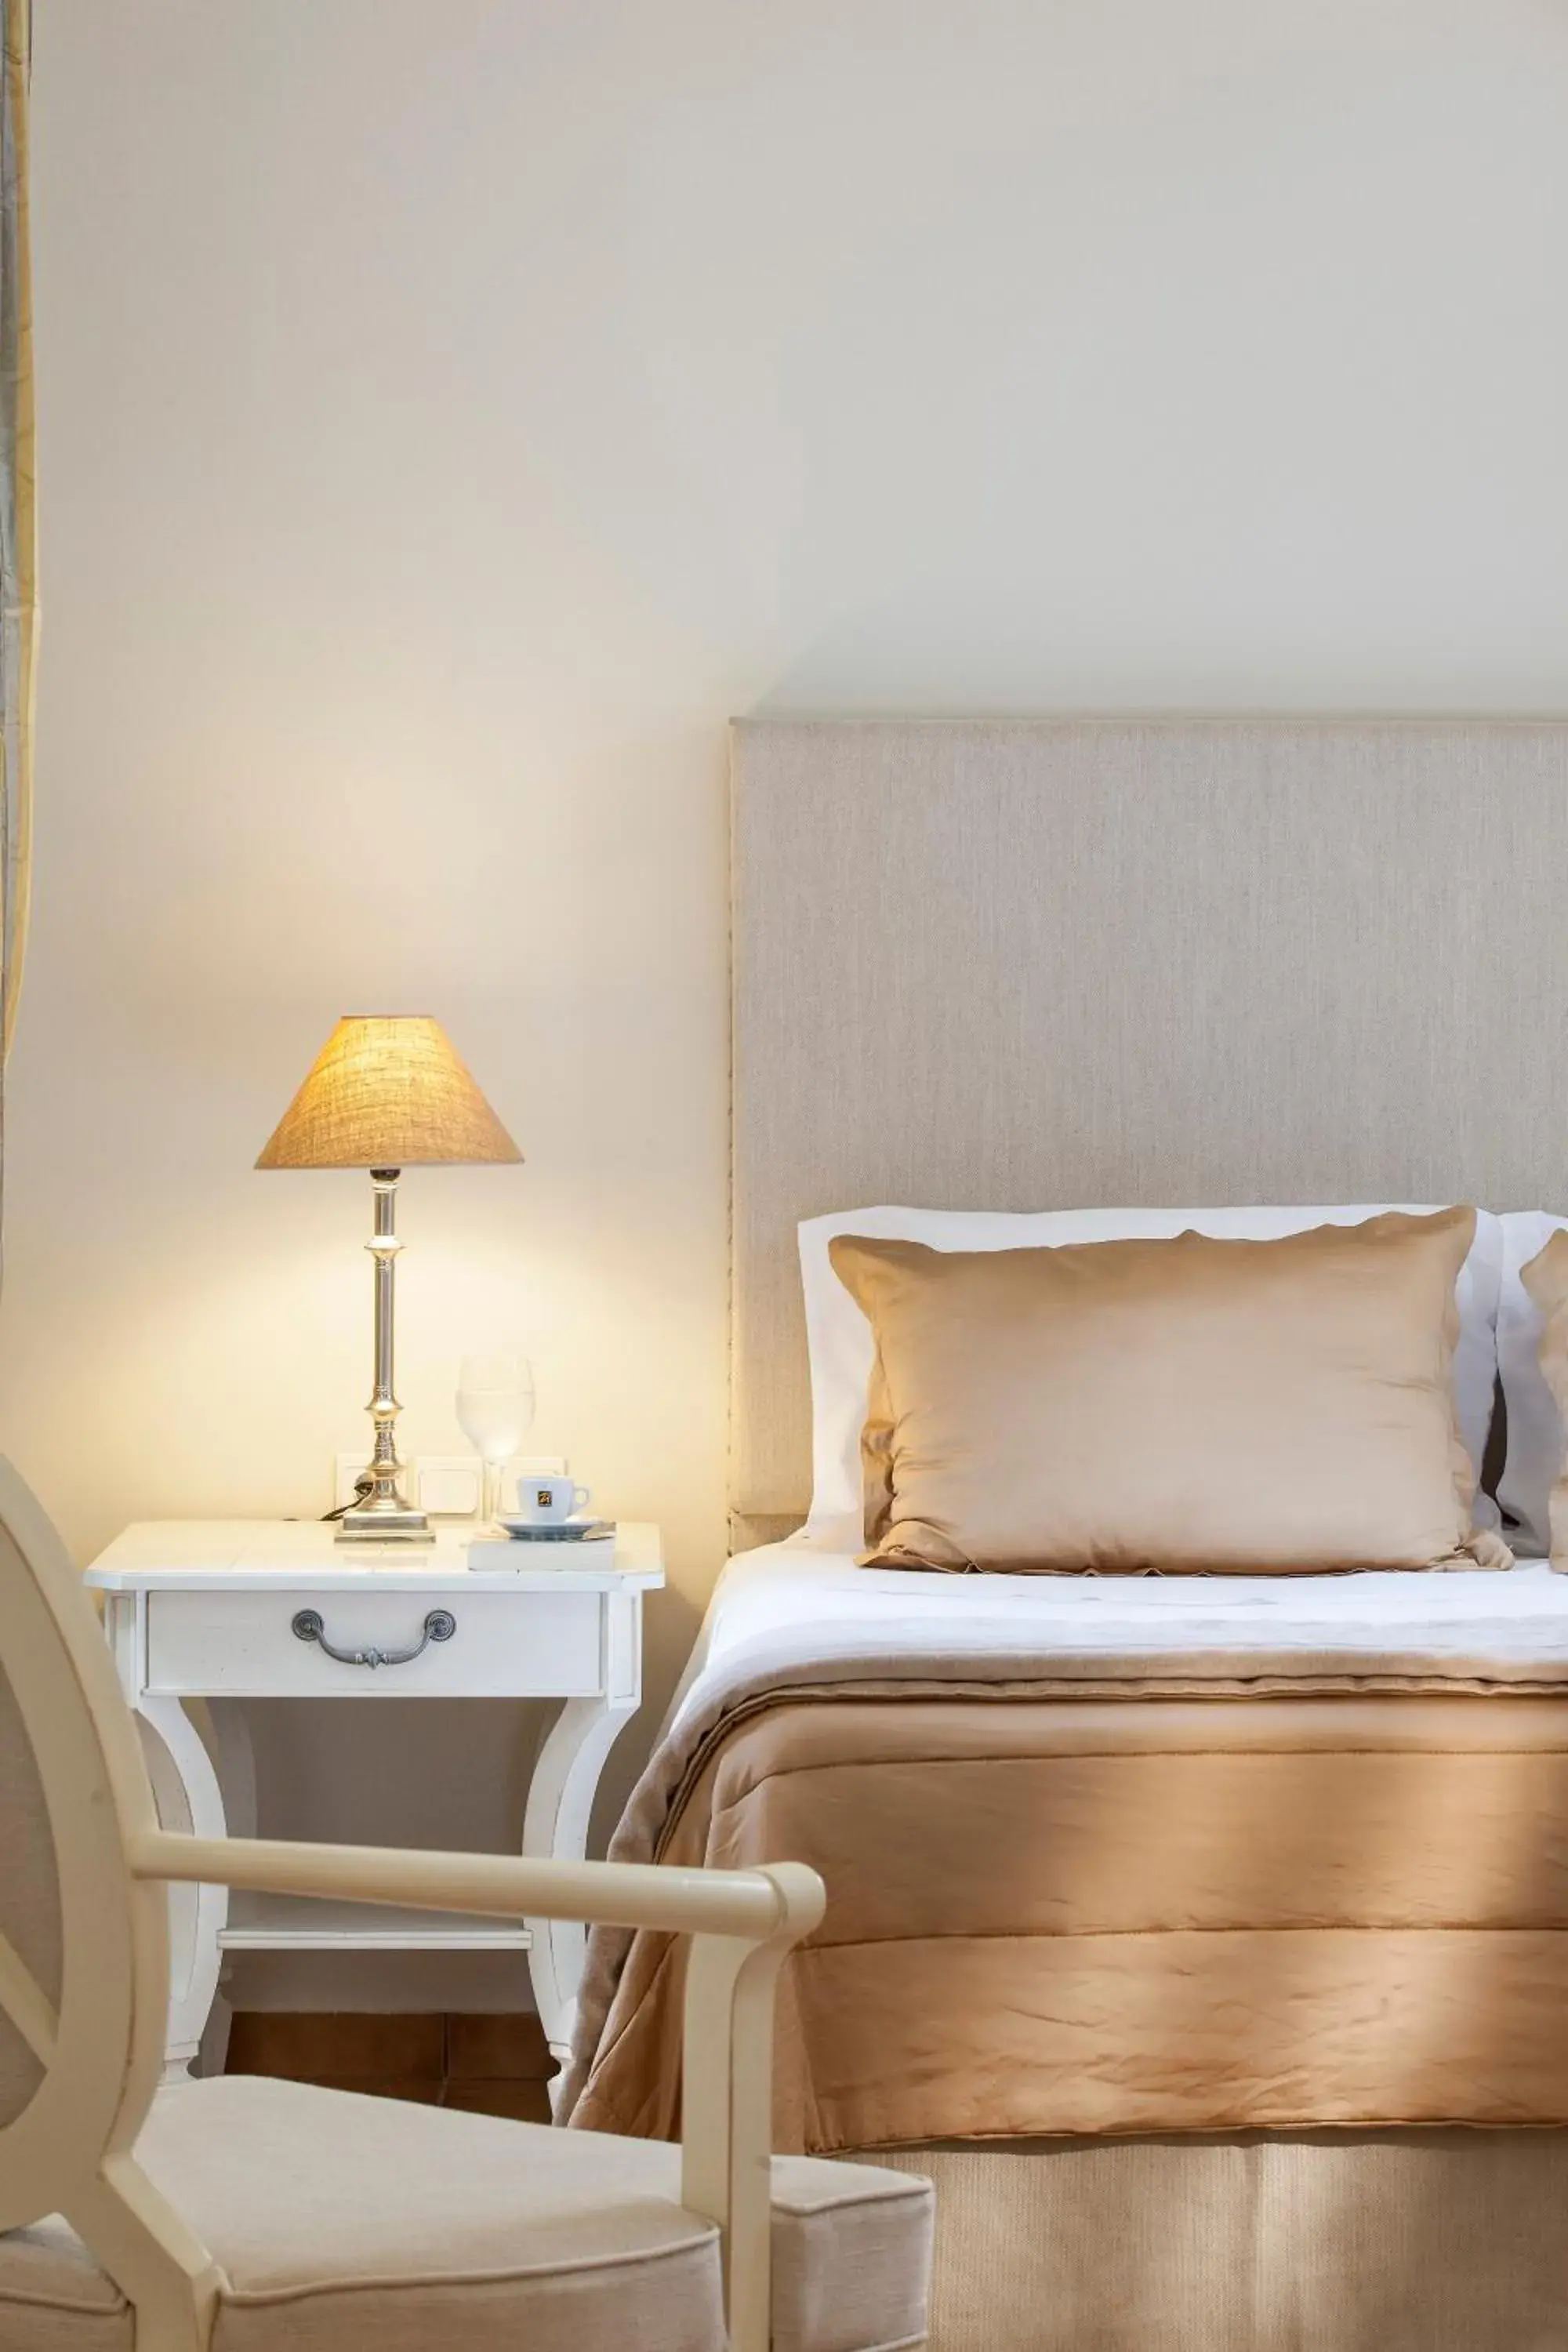 Bed in Aegean Suites Hotel